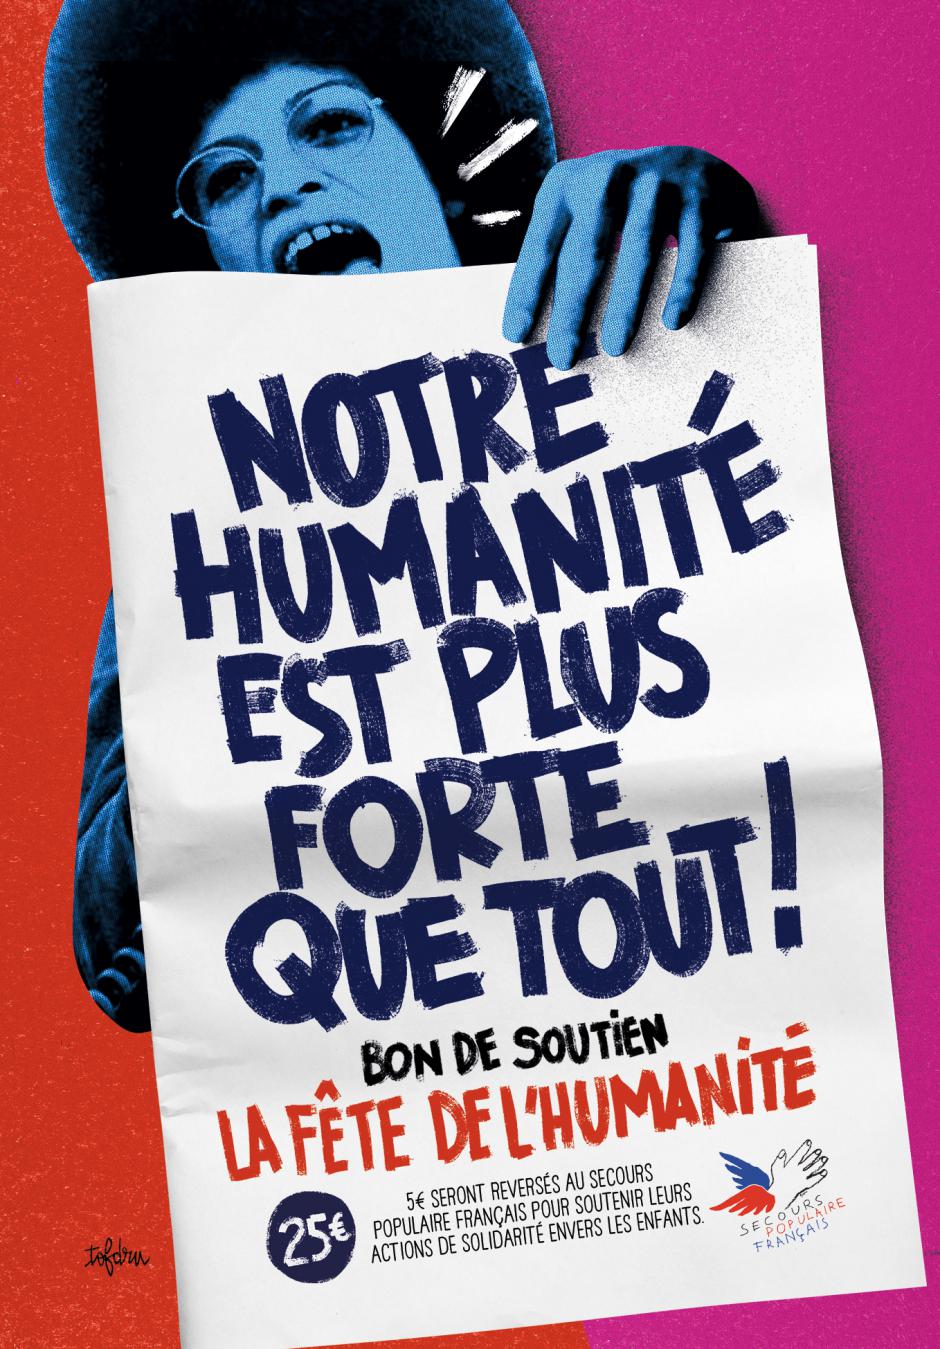 Je soutiens la Fête de l'Humanité : je me procure des bons de soutien ! (25 euros, dont 5 reversés au Secours populaire français)